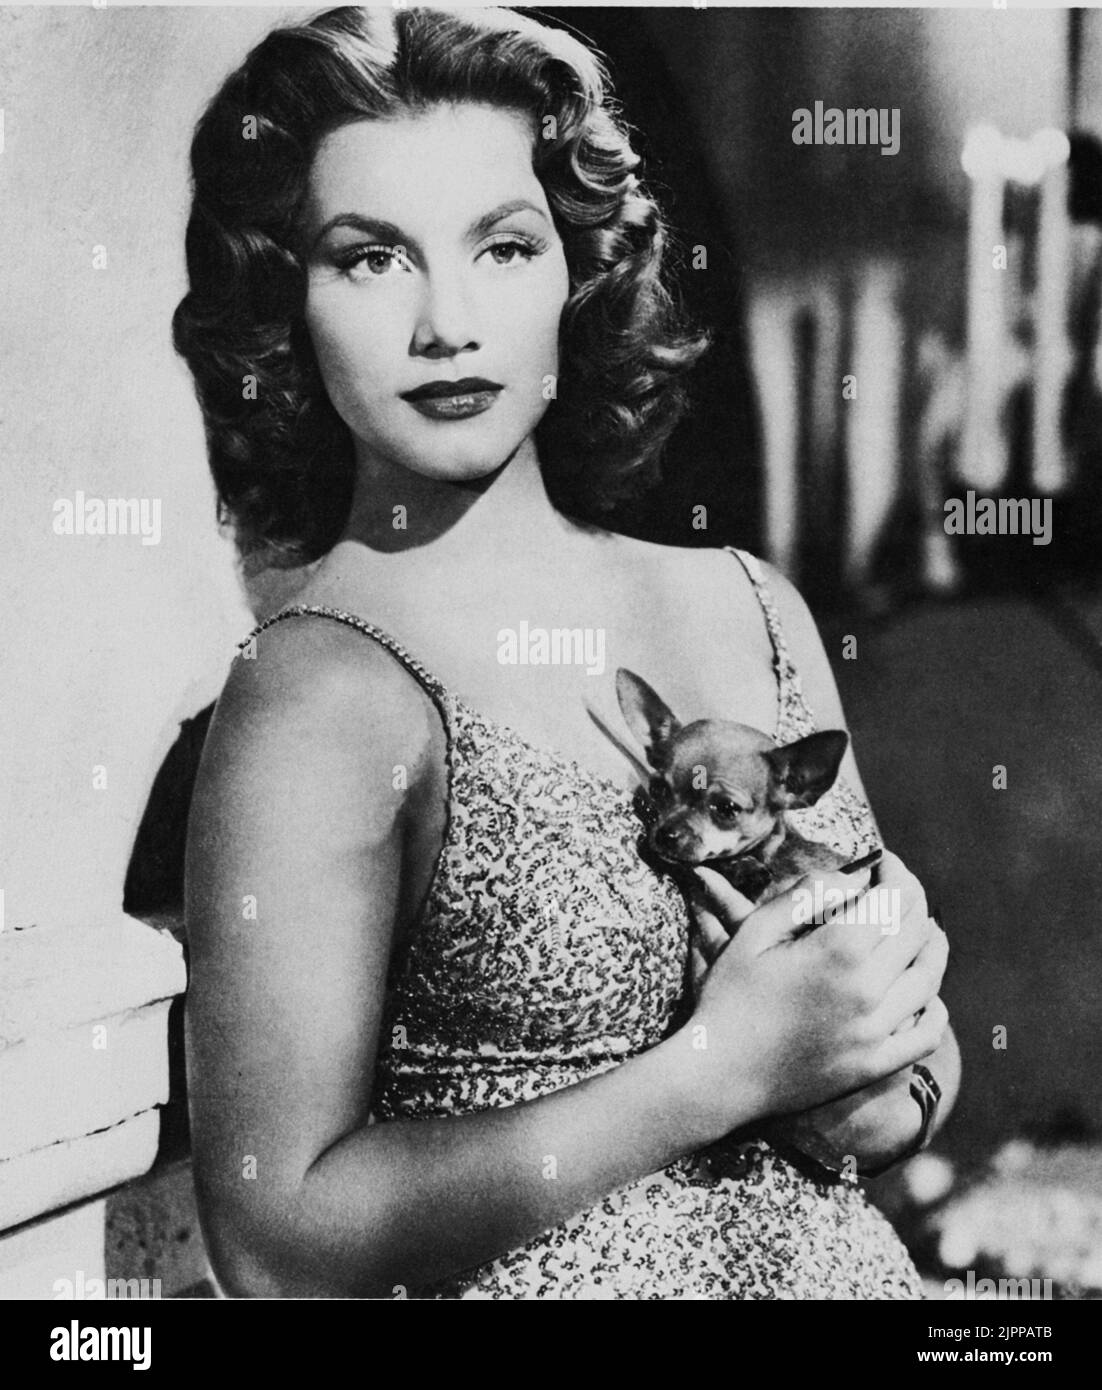 L'attrice cinematografica LINDA CHRISTIAN ( 1923 - 2011 ) , sposò dal 1949 al 1956 con Tyrone Power e dal 1962 al 1963 con Edmund Purdom . Madre di Romina Power Carrisi . - CINEMA - canna - cane da compagnia - chiuawa - ---- Archivio GBB Foto Stock